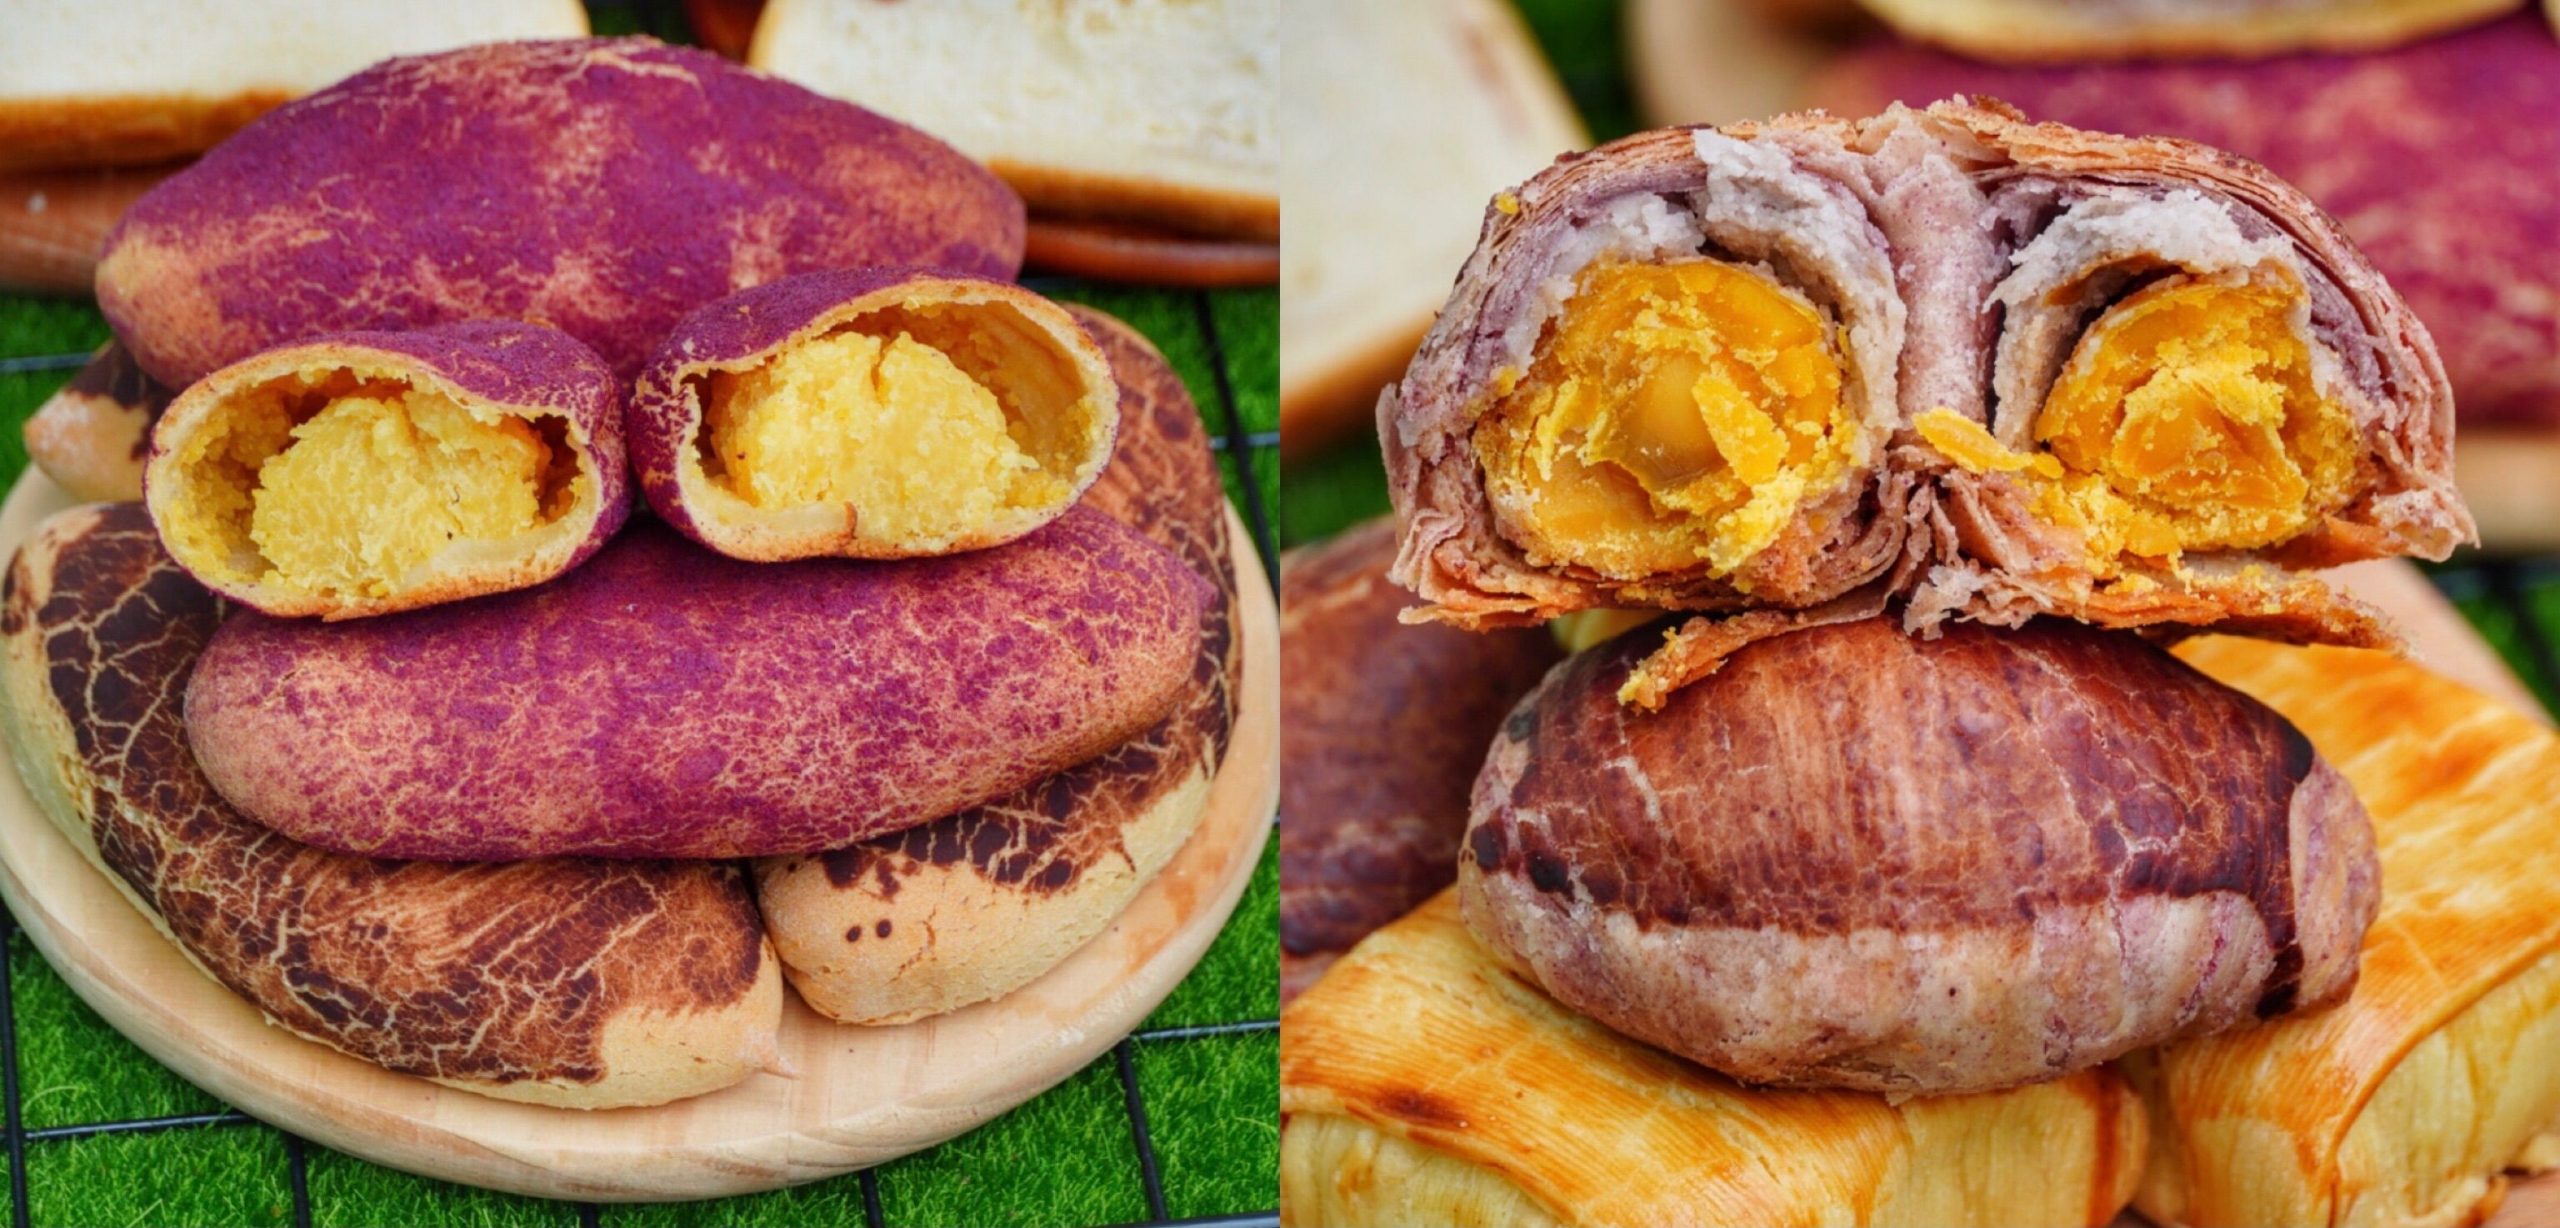 【傳承烘焙坊】台南人氣爆紅「地瓜麵包」迷你芋頭造型的月餅超逼真!!! 還有2小時就秒殺的生吐司